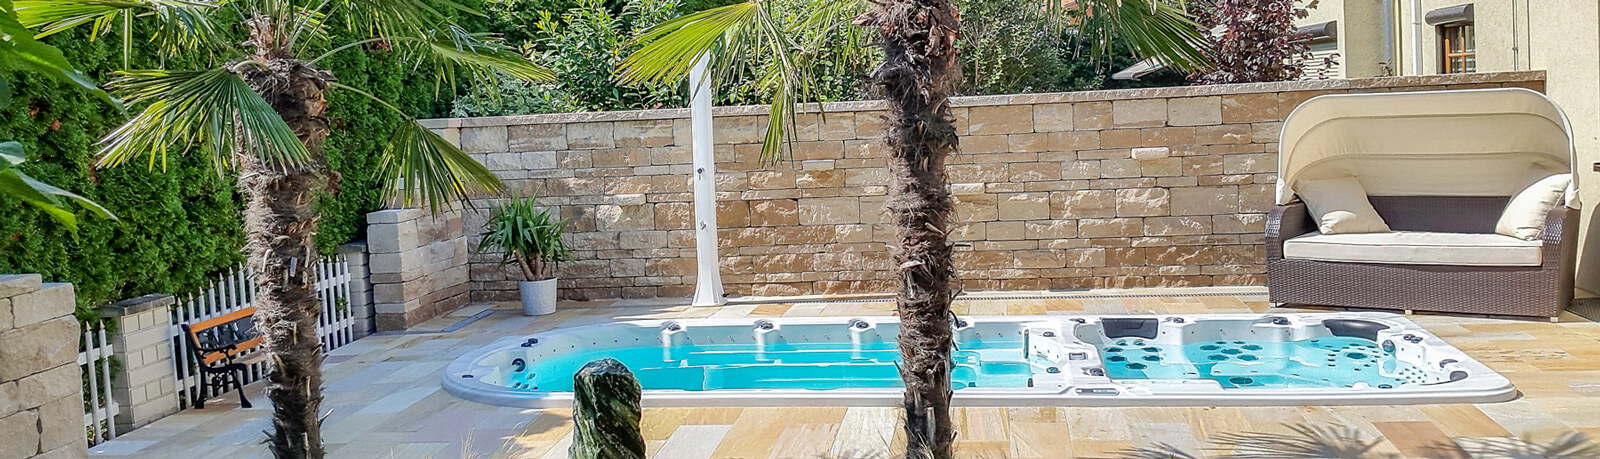 Swim Spa von Armstark mit Palmen